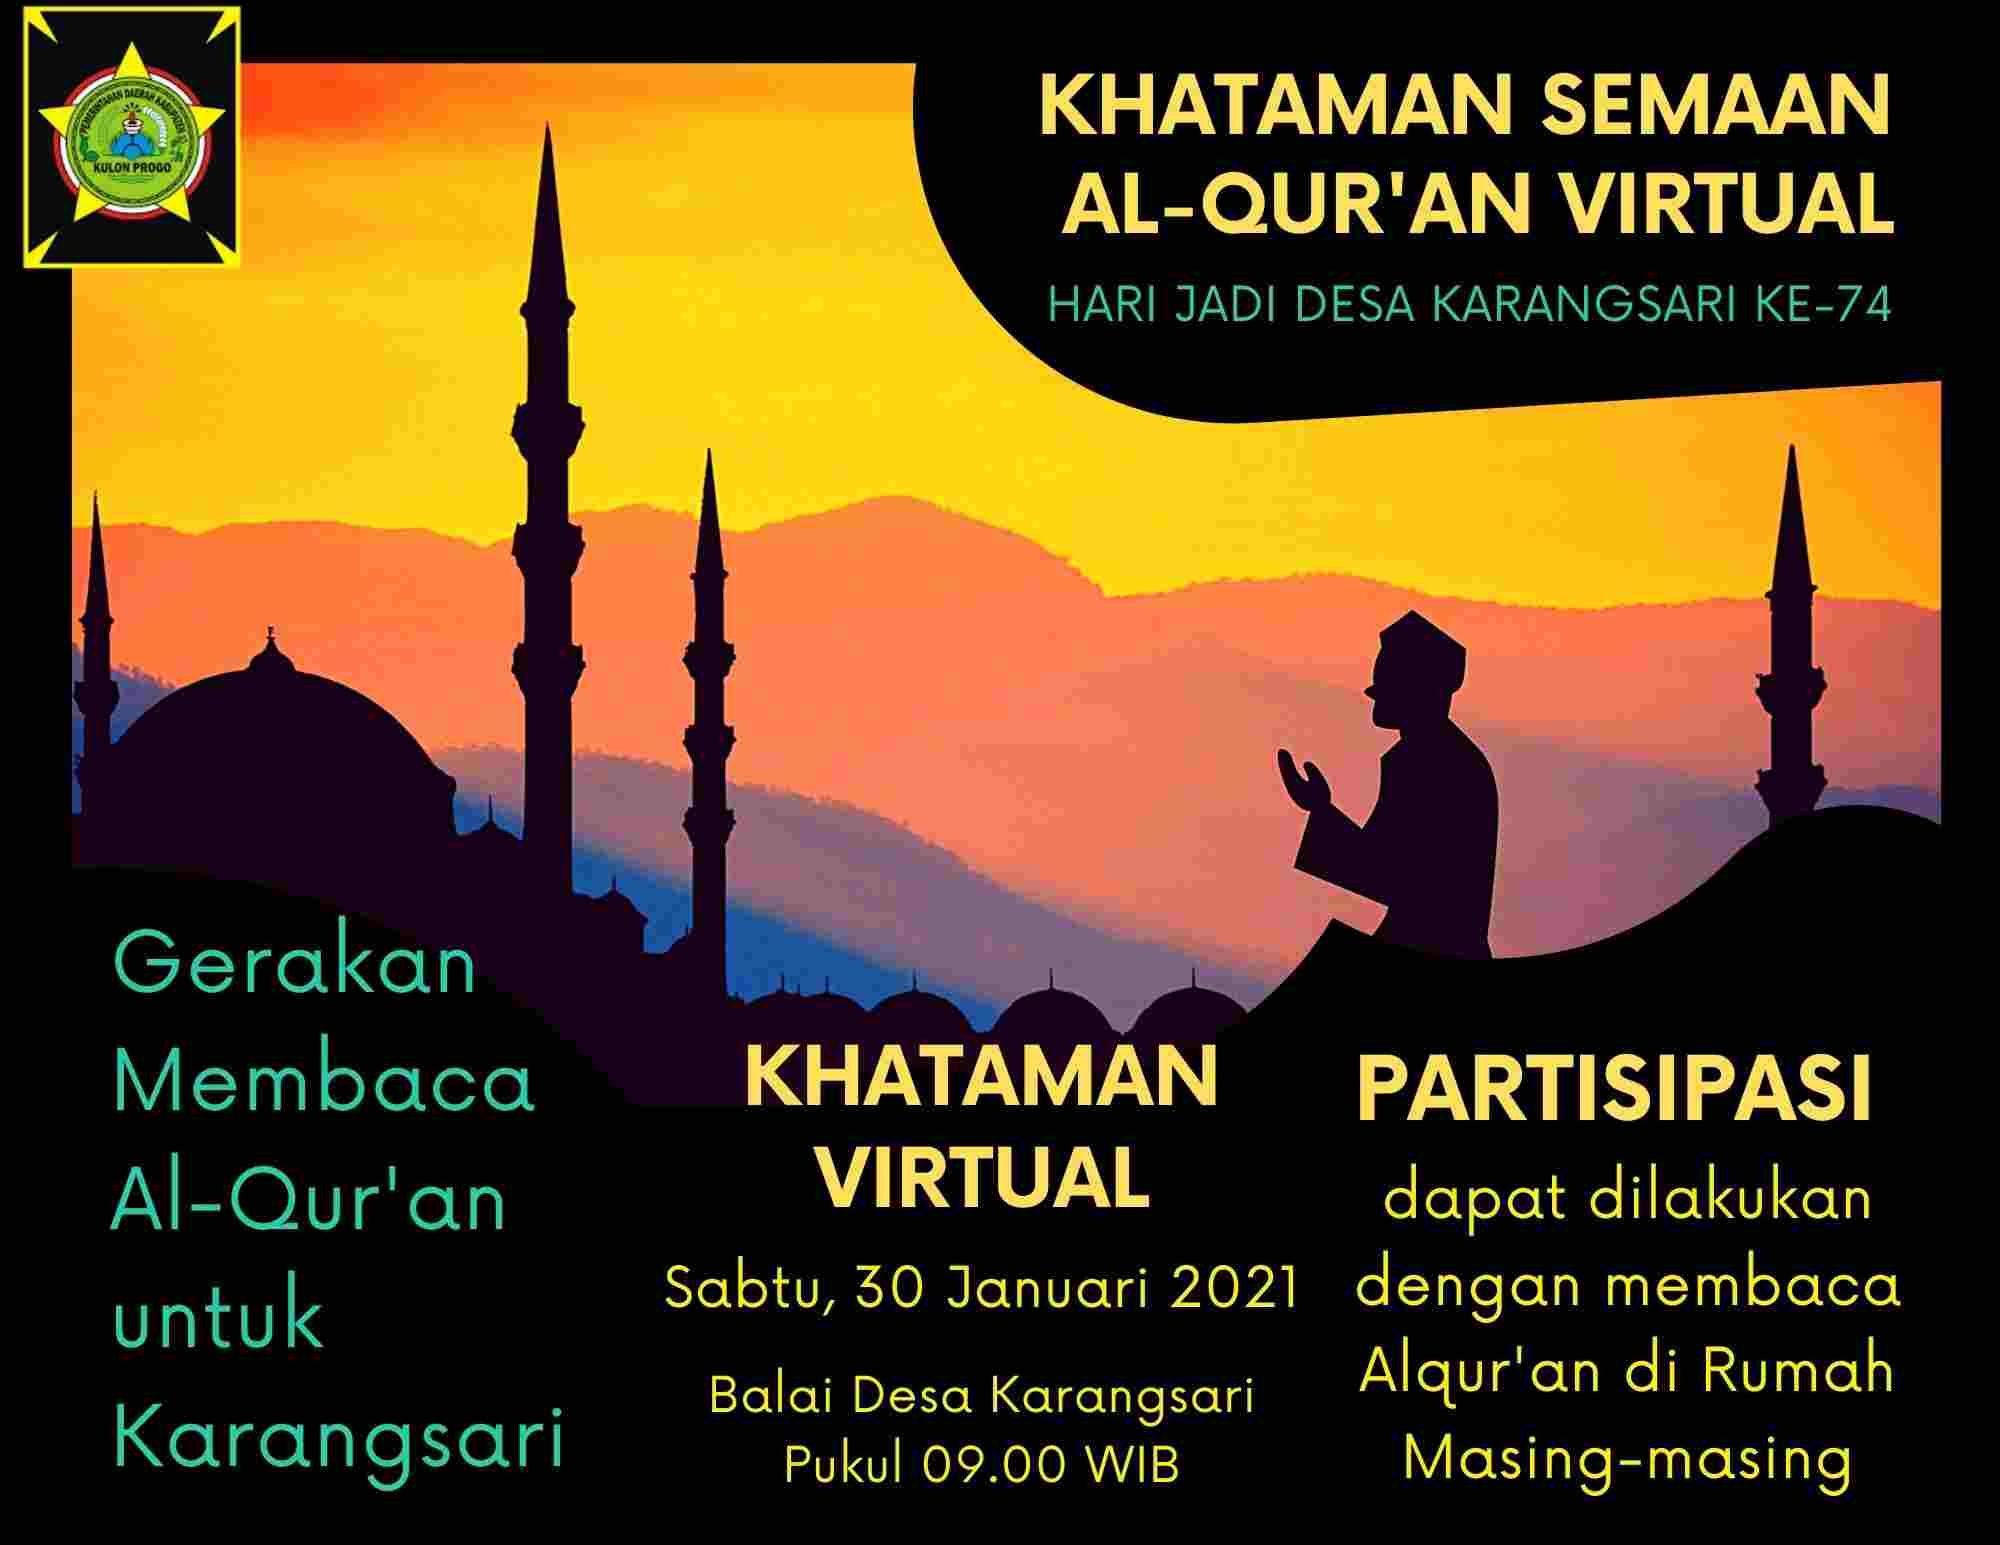 Persembahkan 39 Kali Khataman Qur'an, Warga Peringati Hari Jadi Karangsari Ke-74 